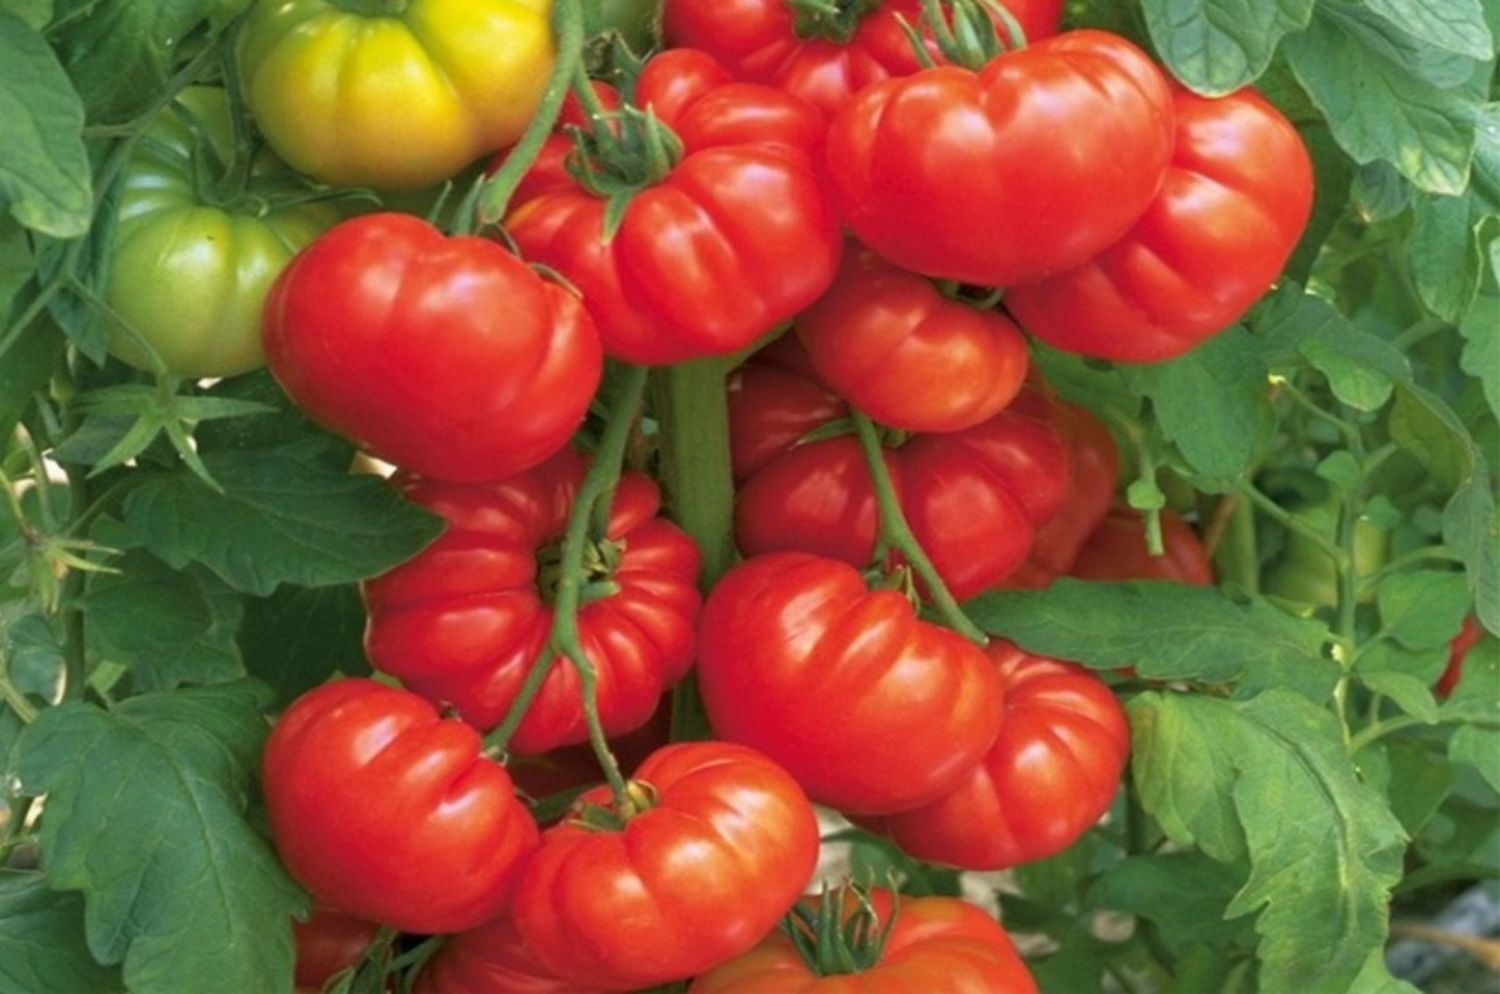 Гибриды томатов для теплиц